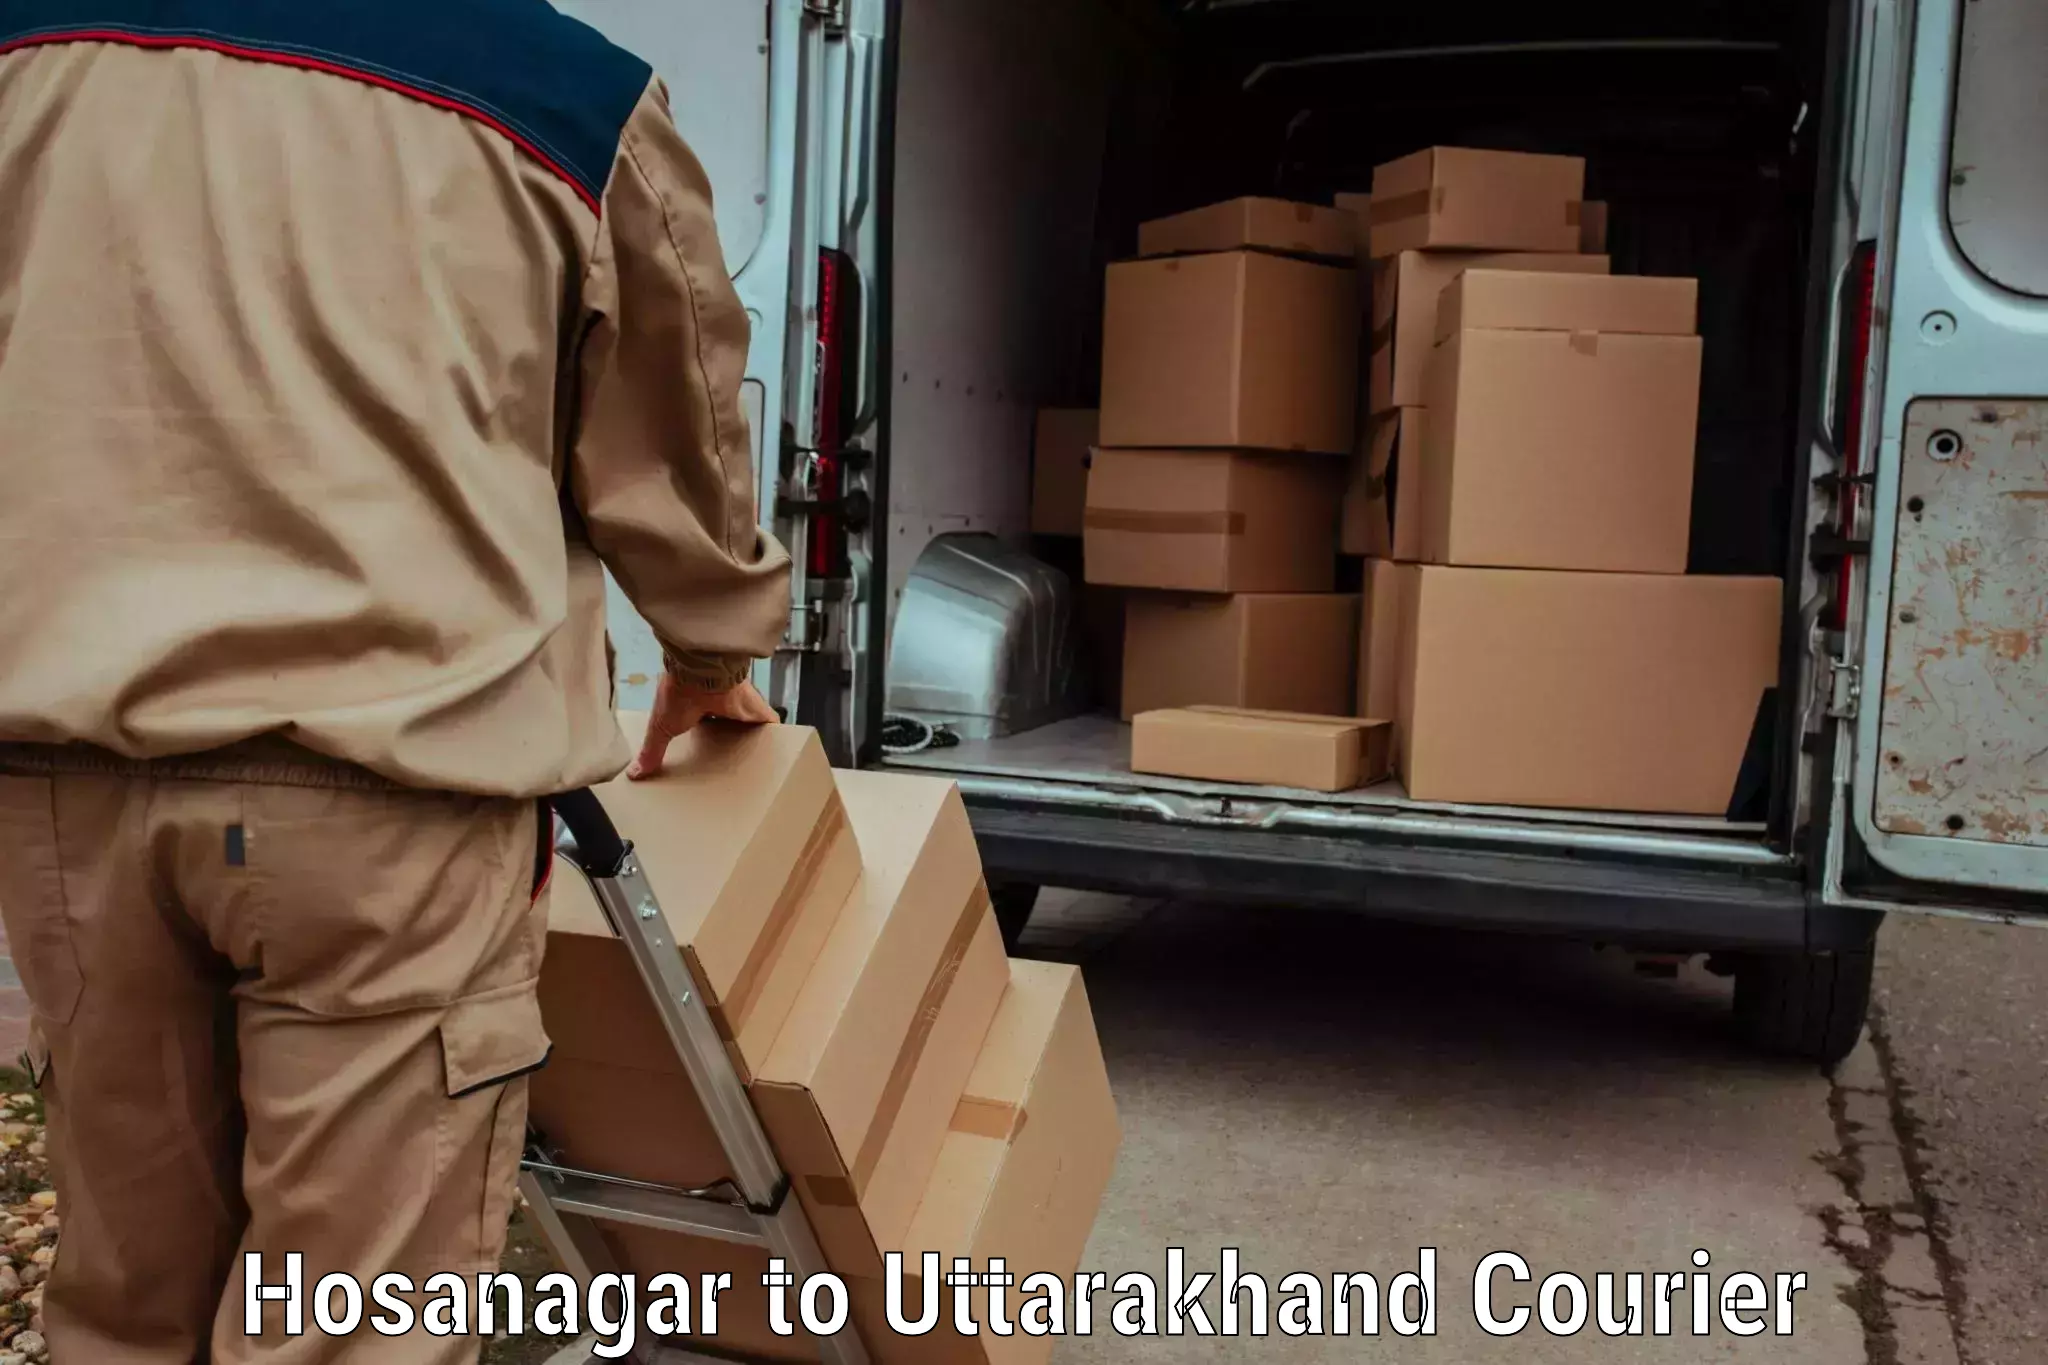 Special handling courier Hosanagar to Dehradun